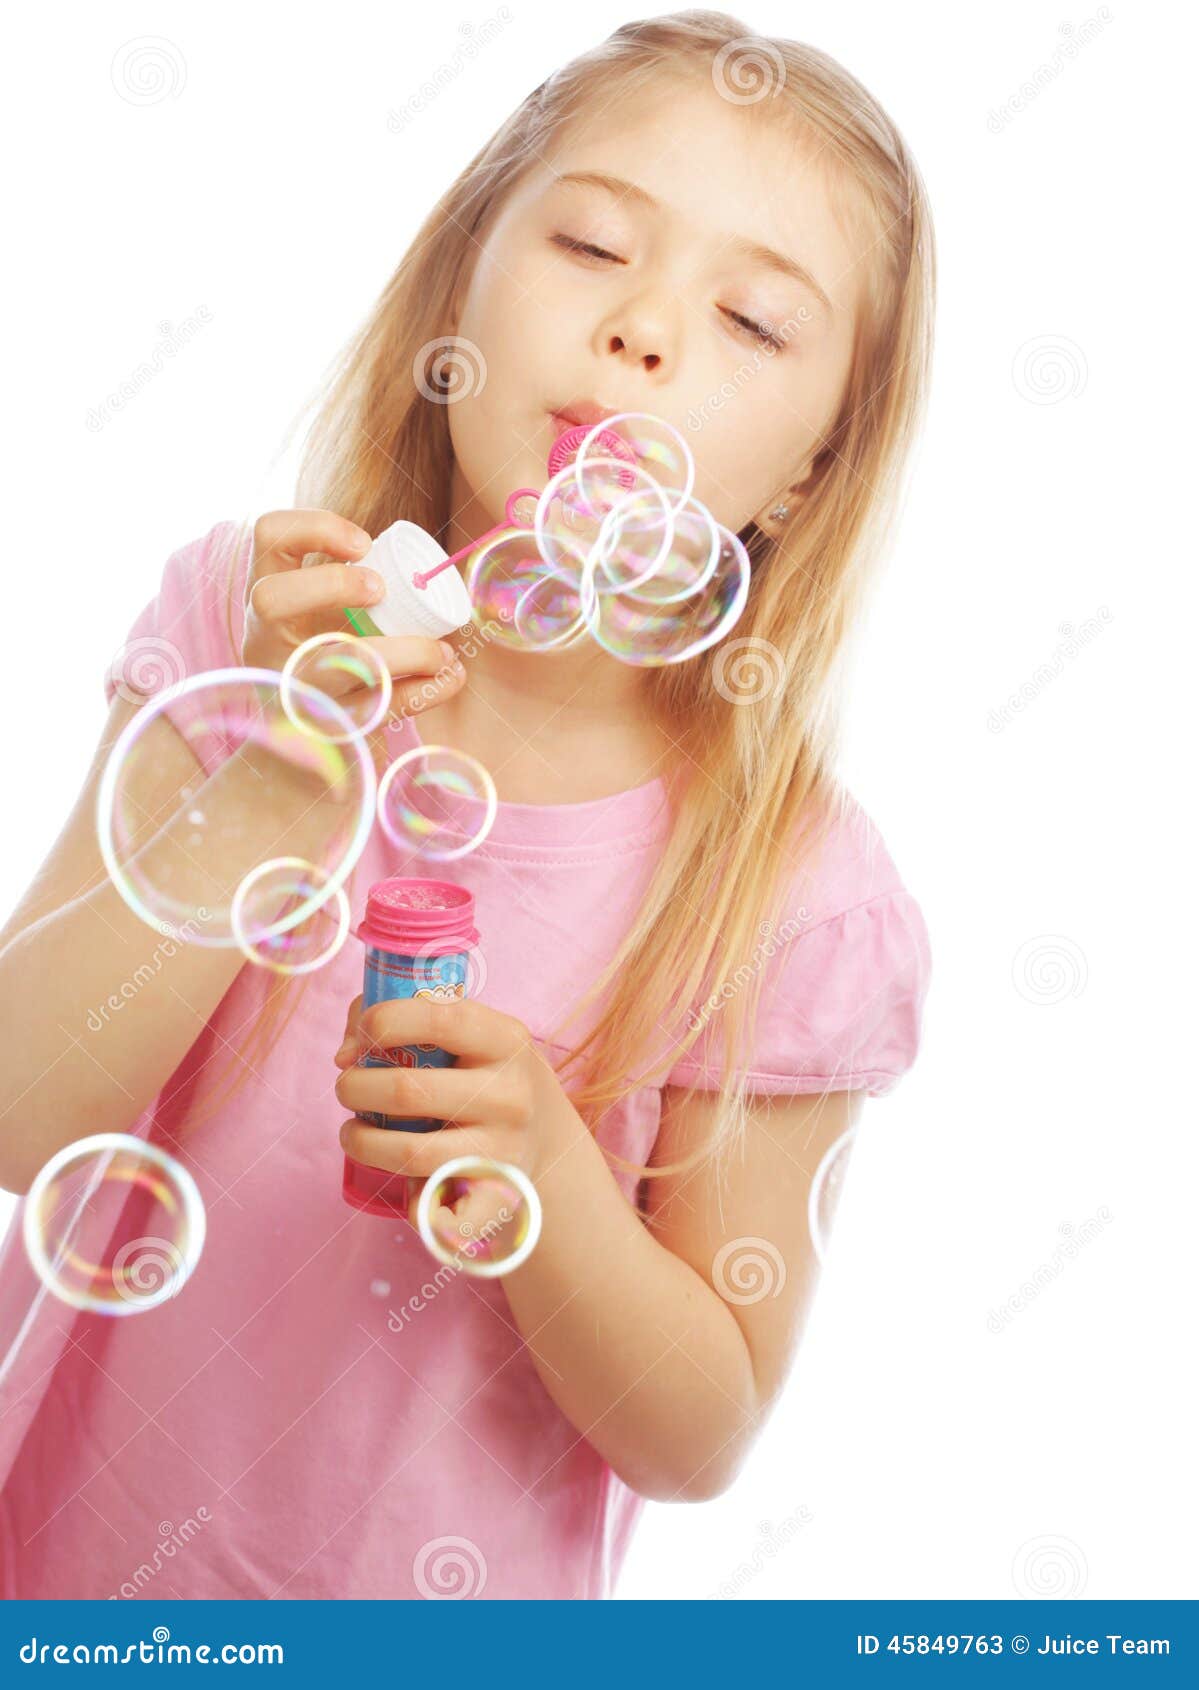 юной девочке сперму в рот фото 95